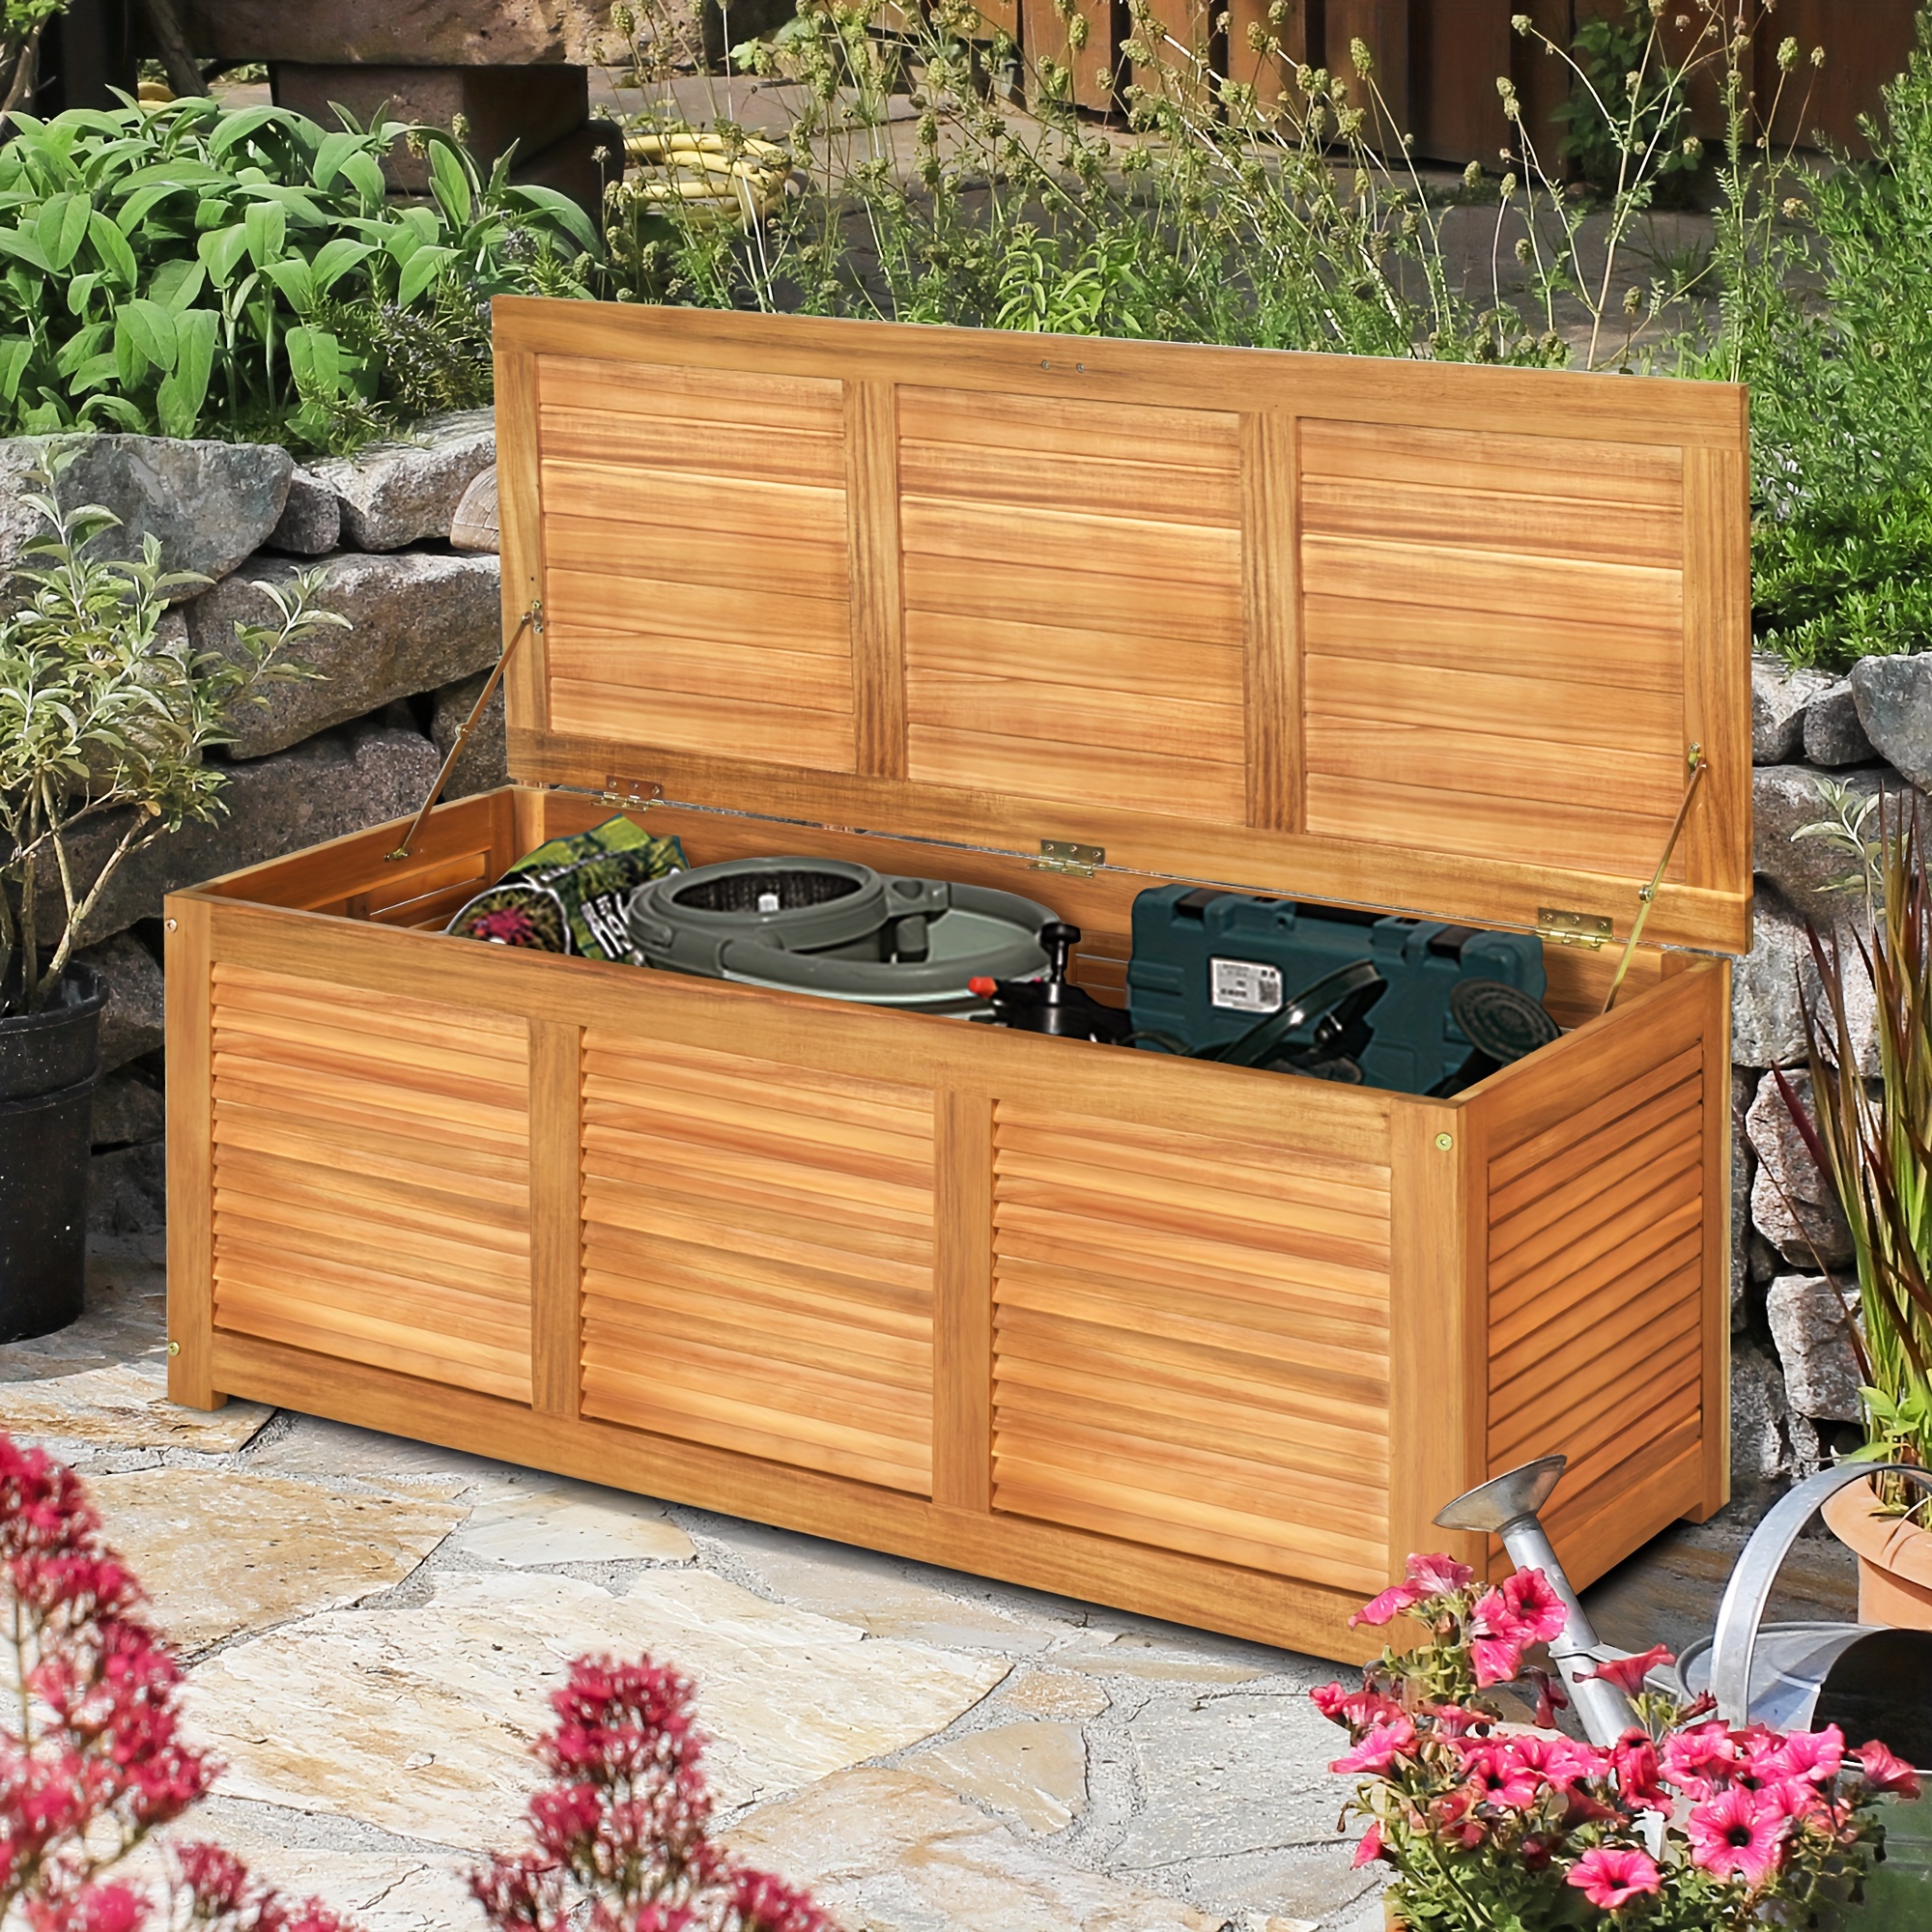 

Acacia Wood Deck Box 47 Gallon Garden Backyard Storage Bench Container